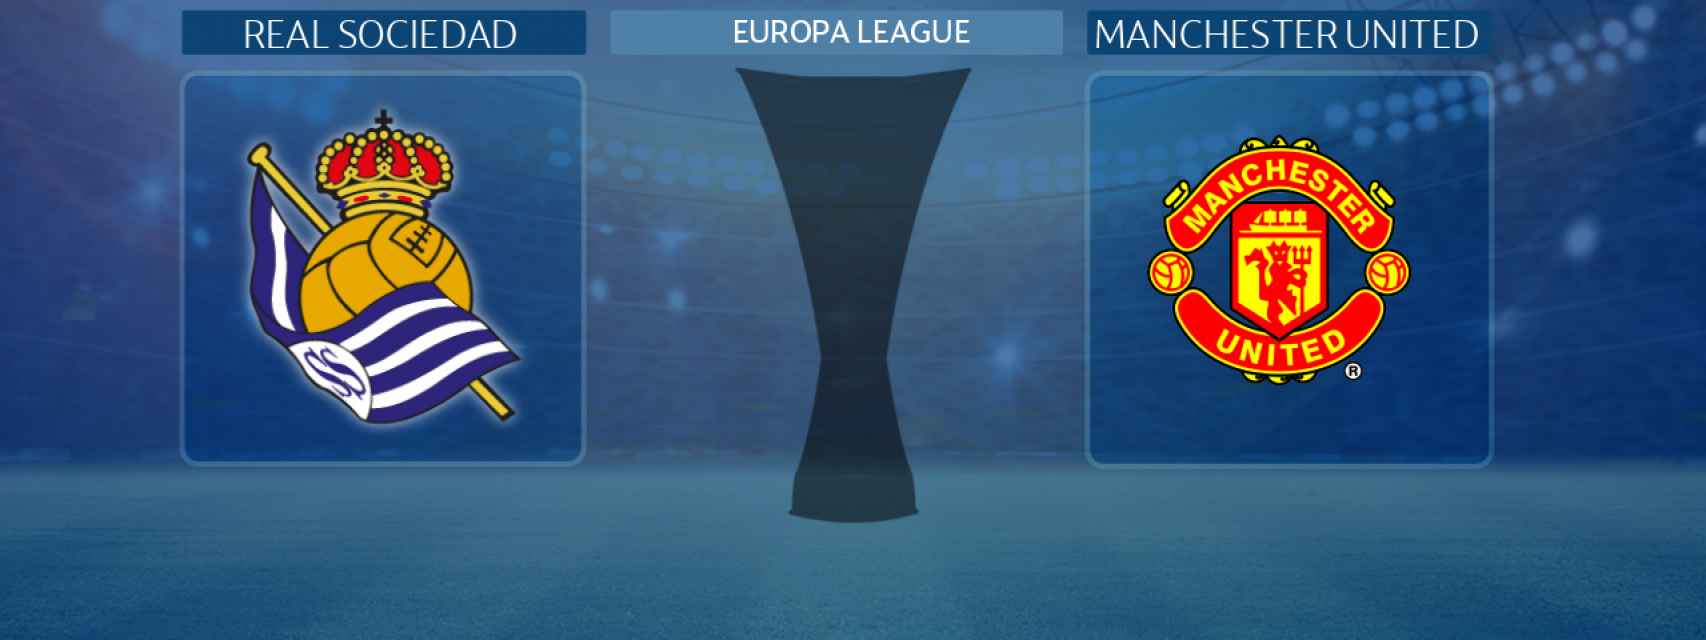 Real Sociedad - Manchester United, partido de laEuropa League